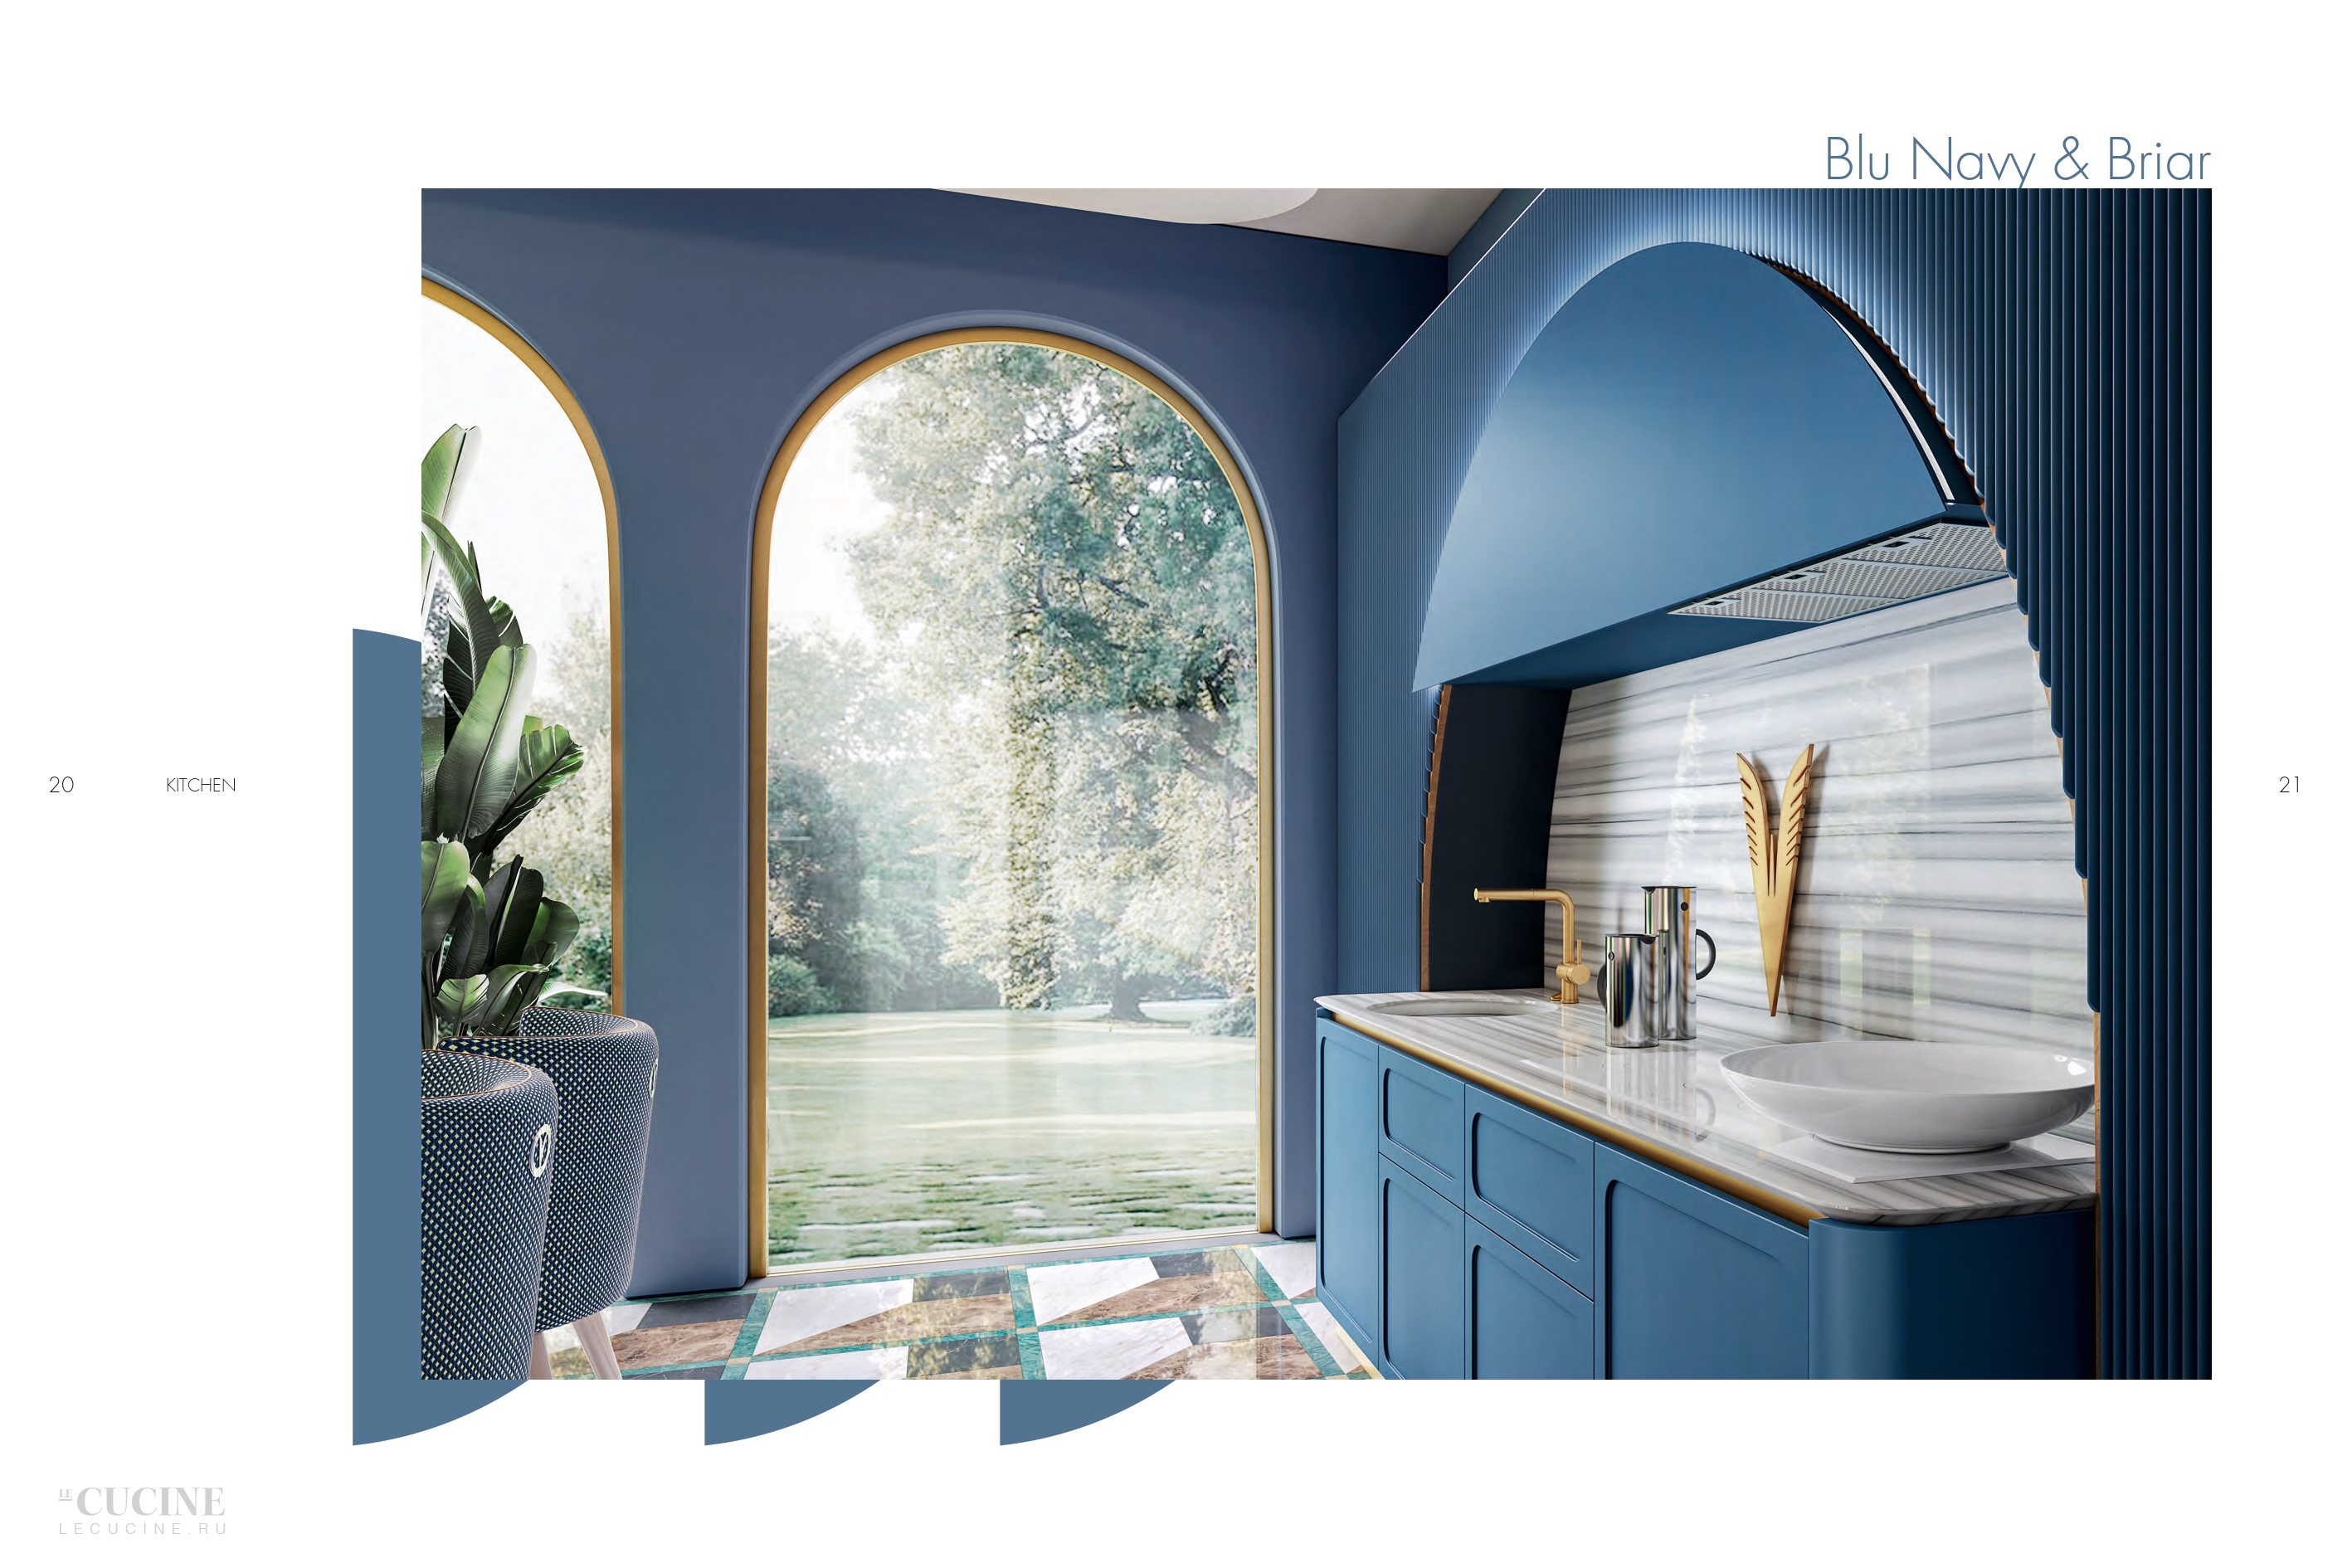 Кухня Twenty ONE - Blue Navy & Briar Alta Moda Italia